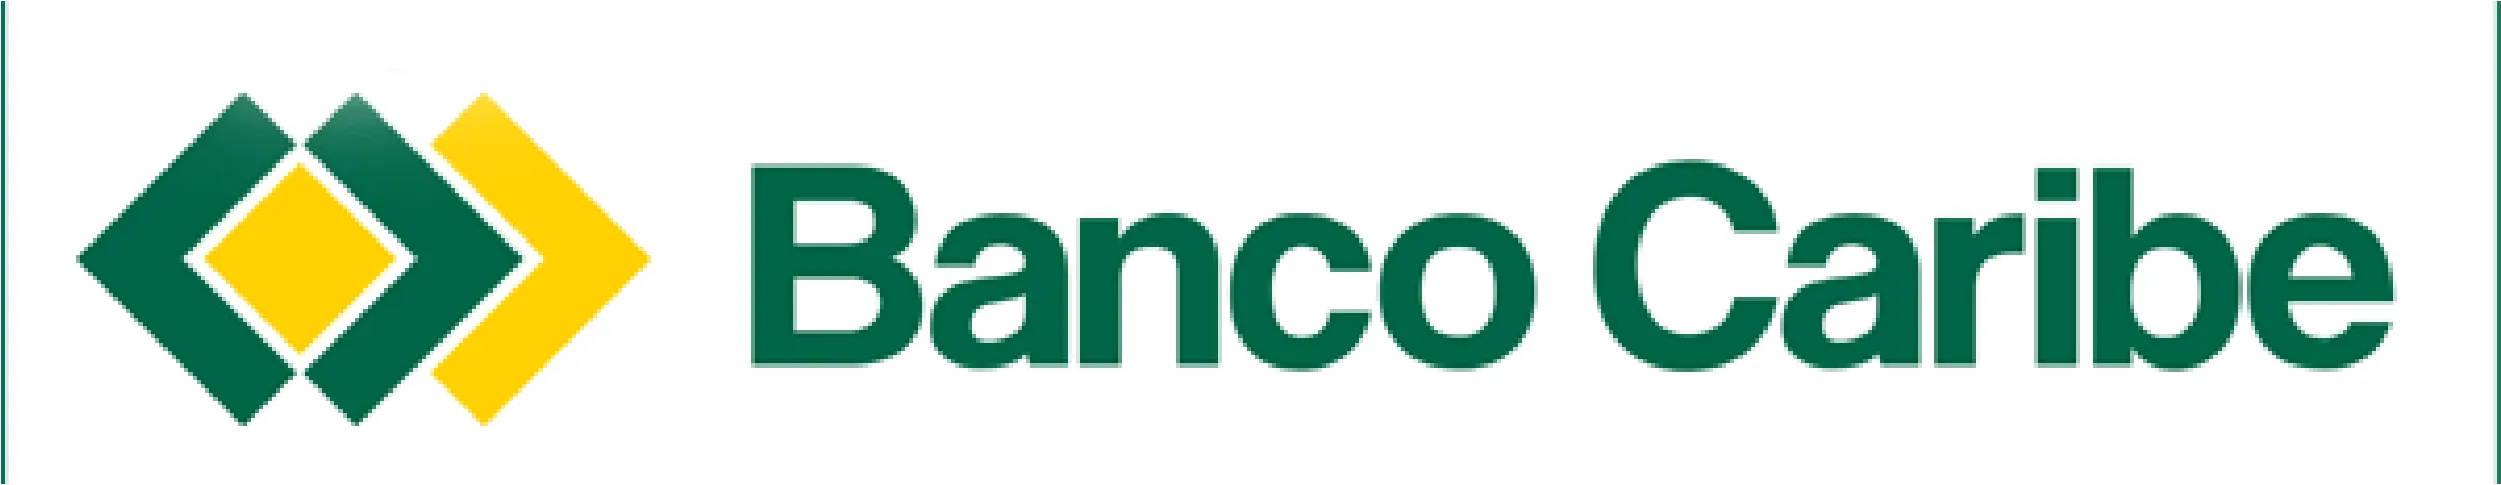 Logo de Banco caribe, letras en color verde